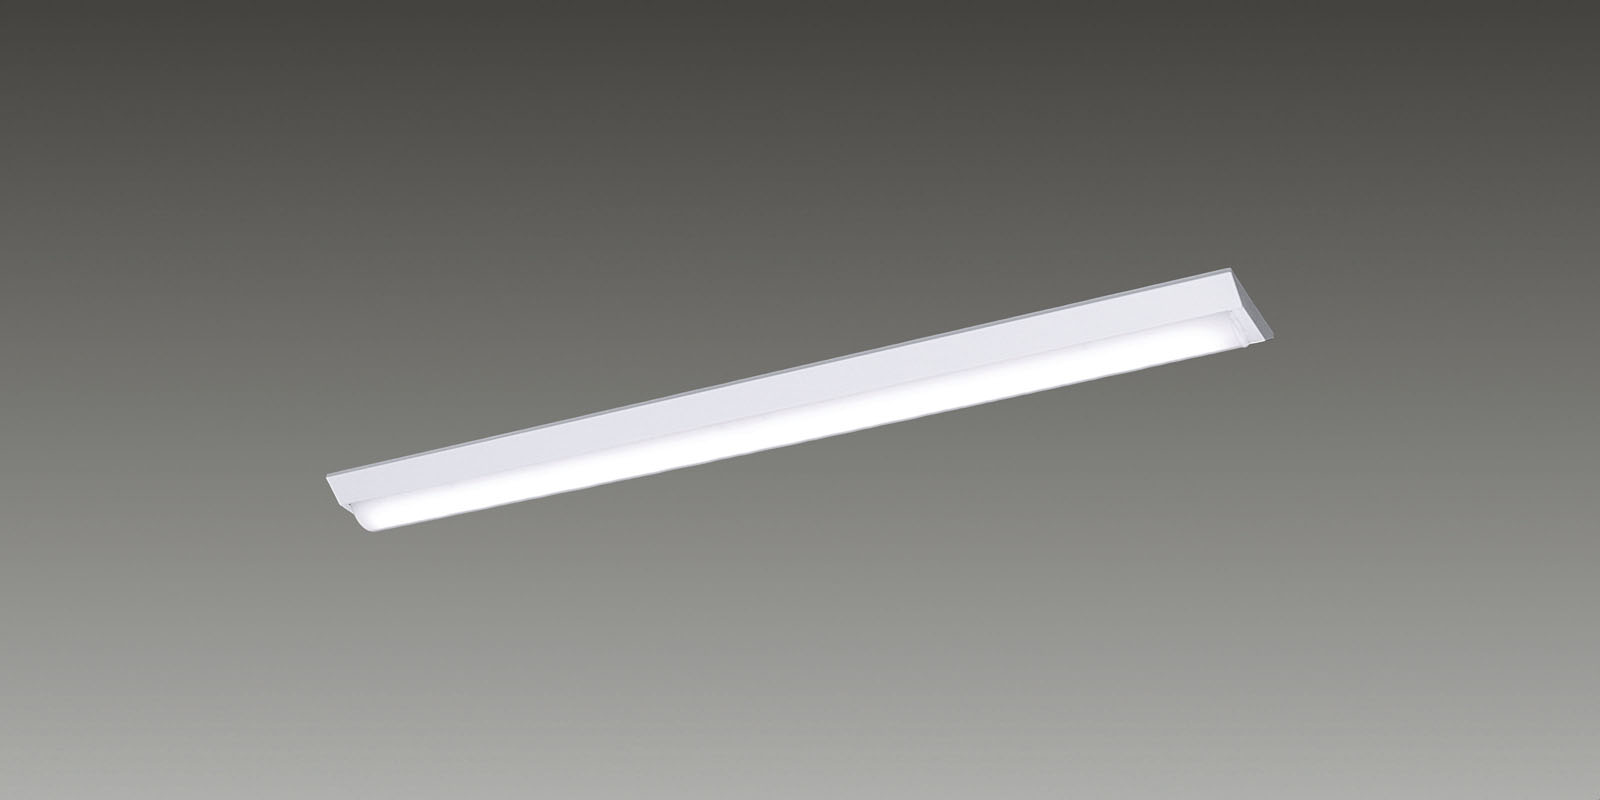 一体型LEDベースライト「iDシリーズ」40形 10000 lmタイプを発売｜パナソニックのプレスリリース